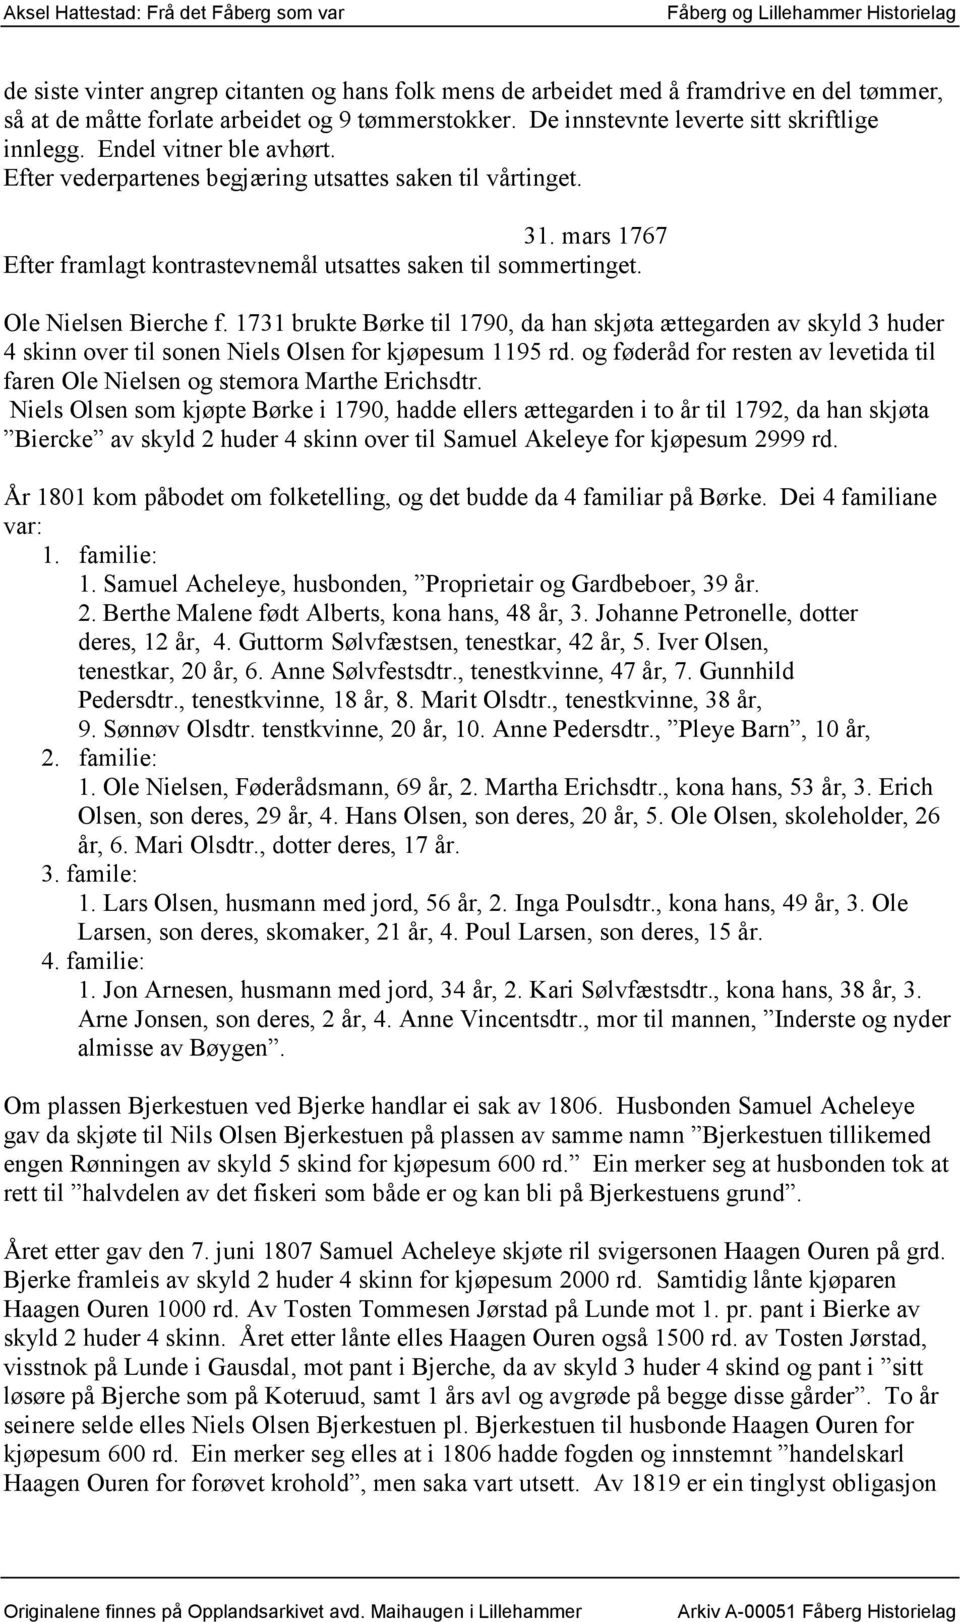 1731 brukte Børke til 1790, da han skjøta ættegarden av skyld 3 huder 4 skinn over til sonen Niels Olsen for kjøpesum 1195 rd.